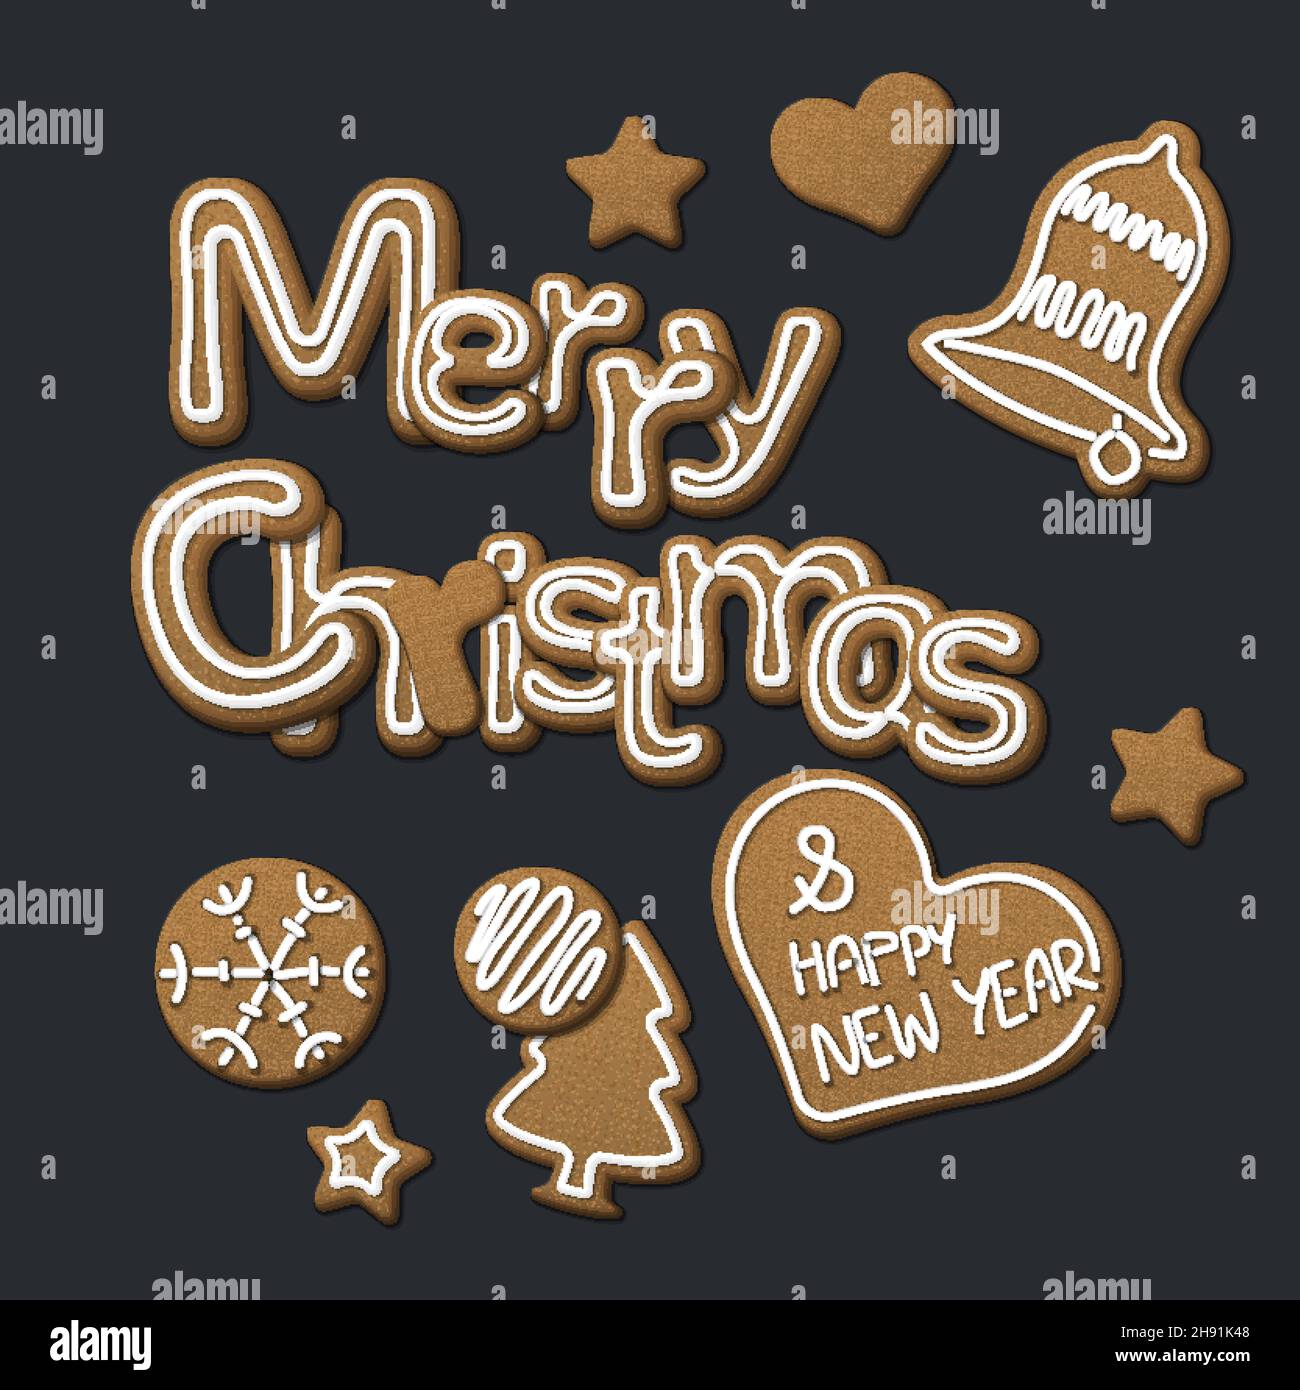 Frohe Weihnachtskarte aus verschiedenen weihnachts-süßen Lebkuchen-Keksen Buchstaben mit weißer Glasur. Schöne Elemente für Ihre Weihnachtskarte oder Social Me Stock Vektor